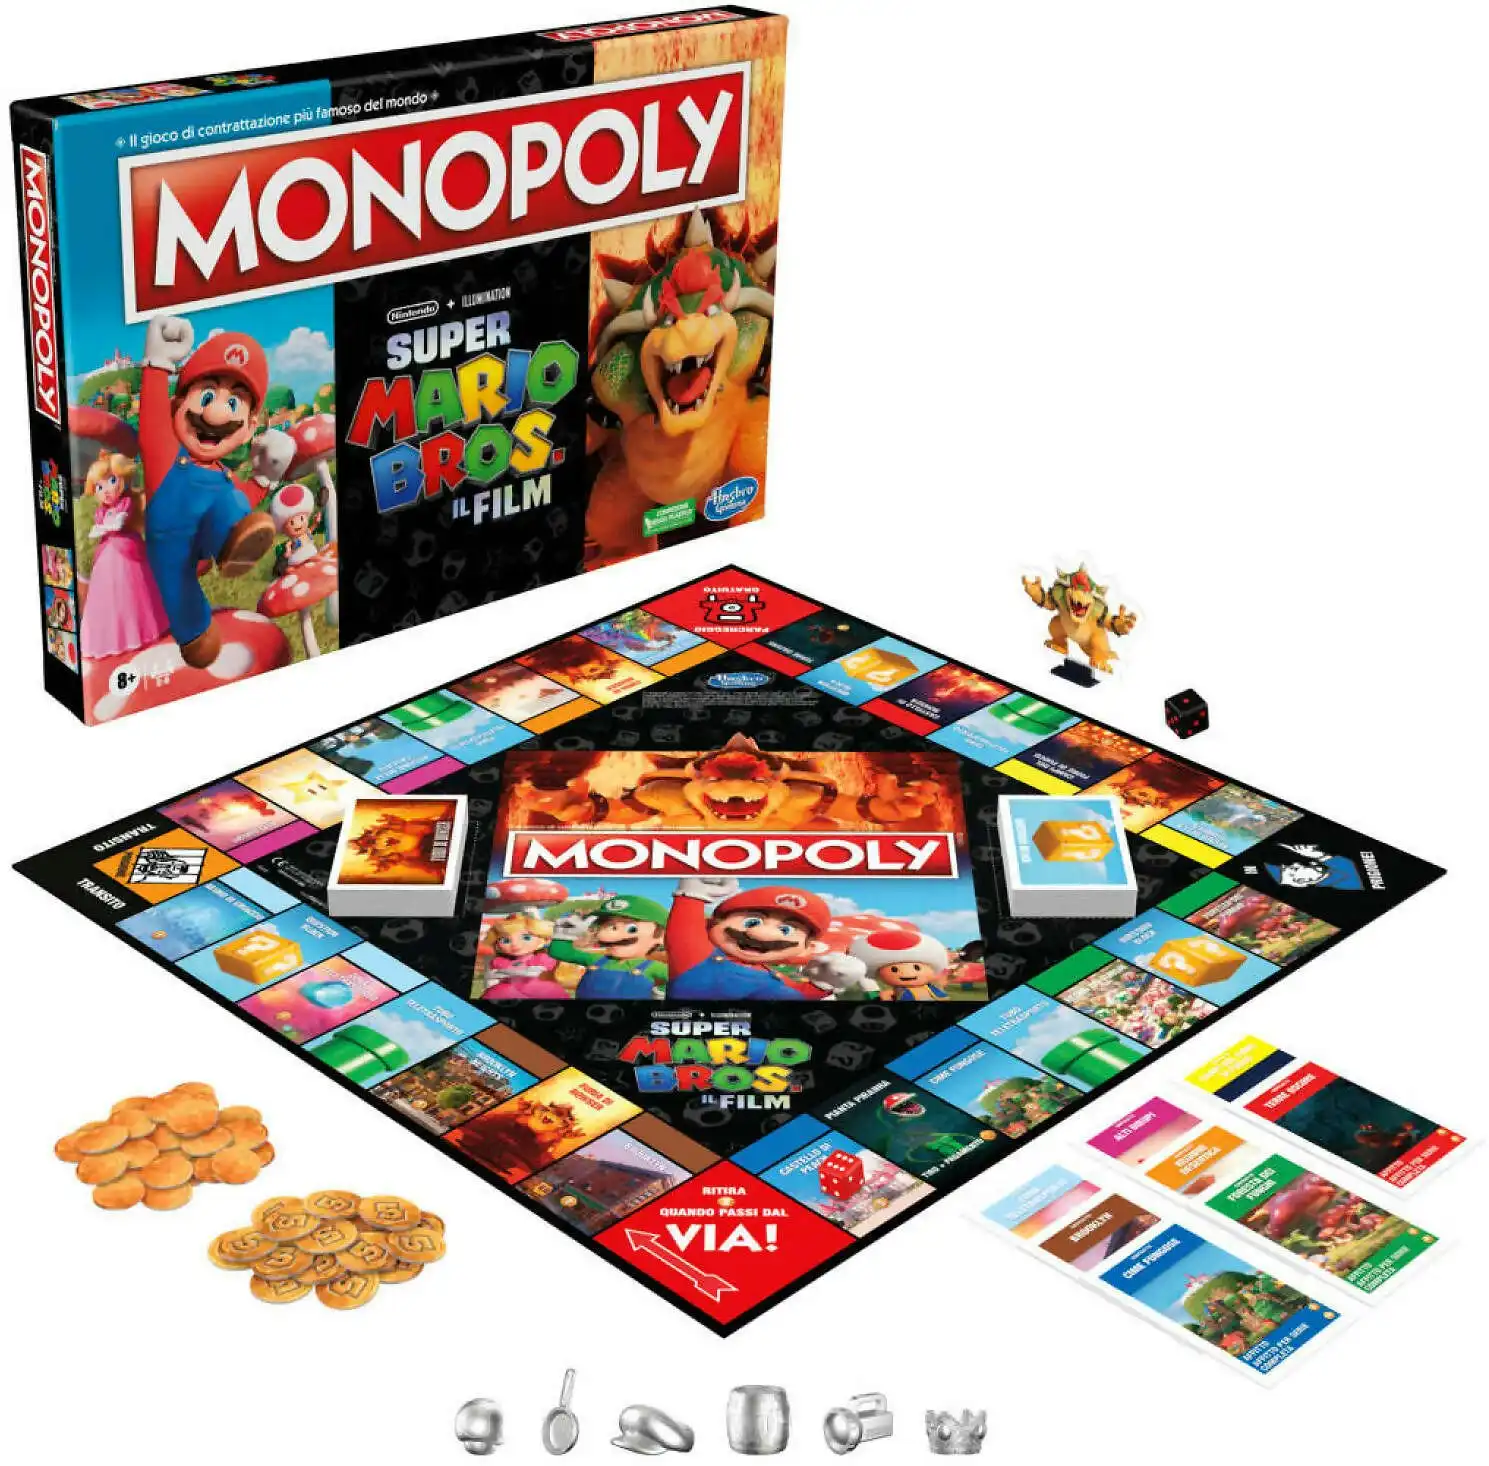 Monopoly - The Super Mario Bros. Movie Edition